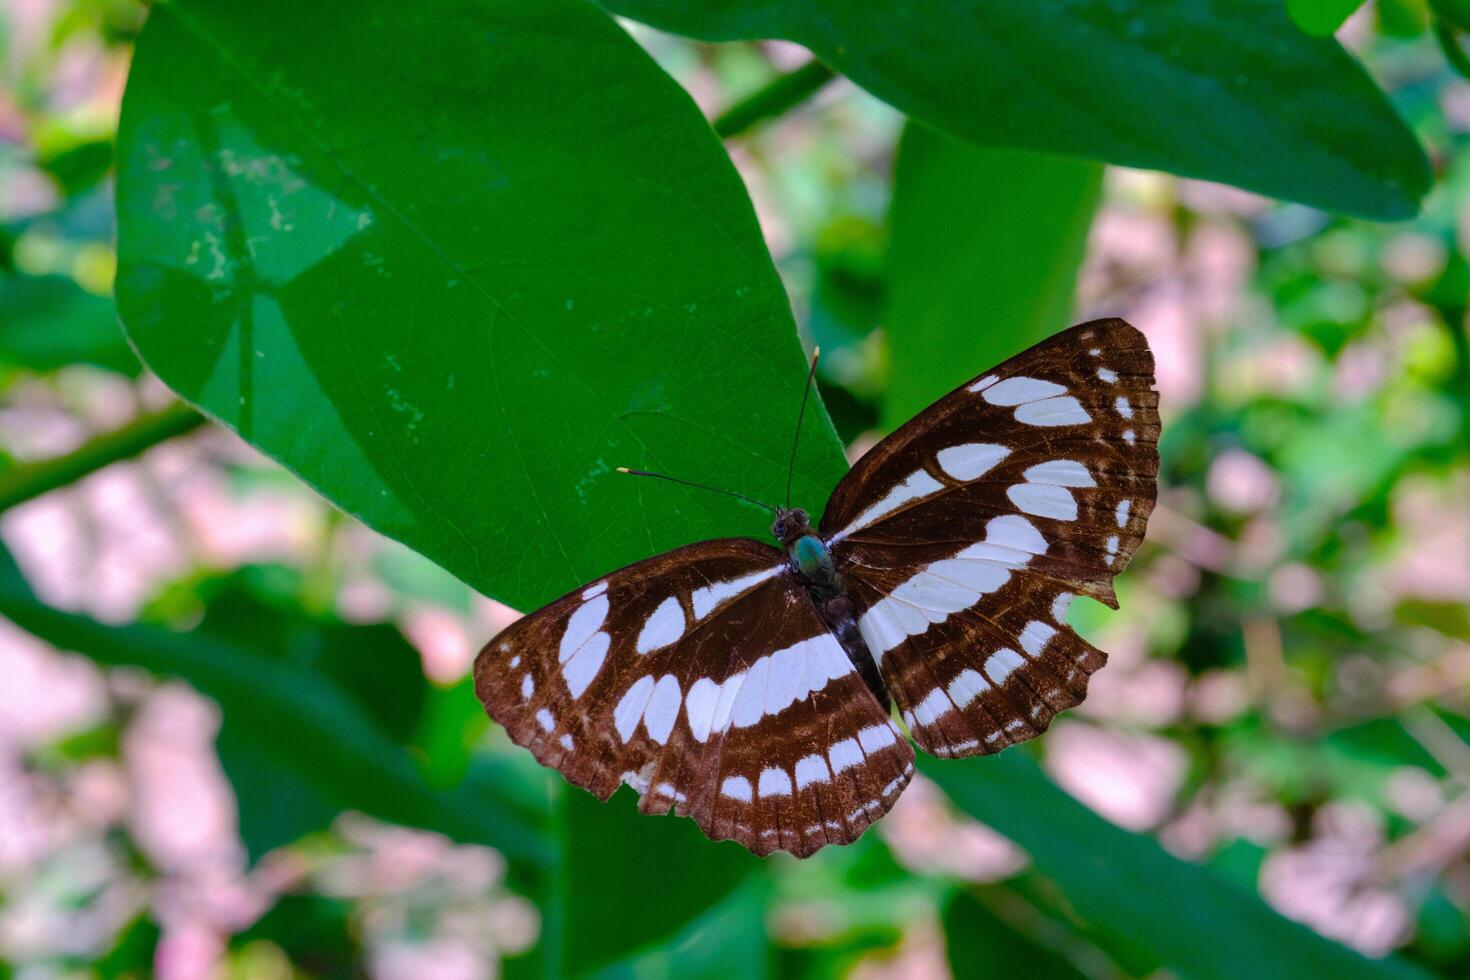 djur- fotografi. djur- närbild. makro Foto av svart och vit mönstrad fjäril eller neptis hylas, uppflugen på en grön blad. bandung - Indonesien, Asien